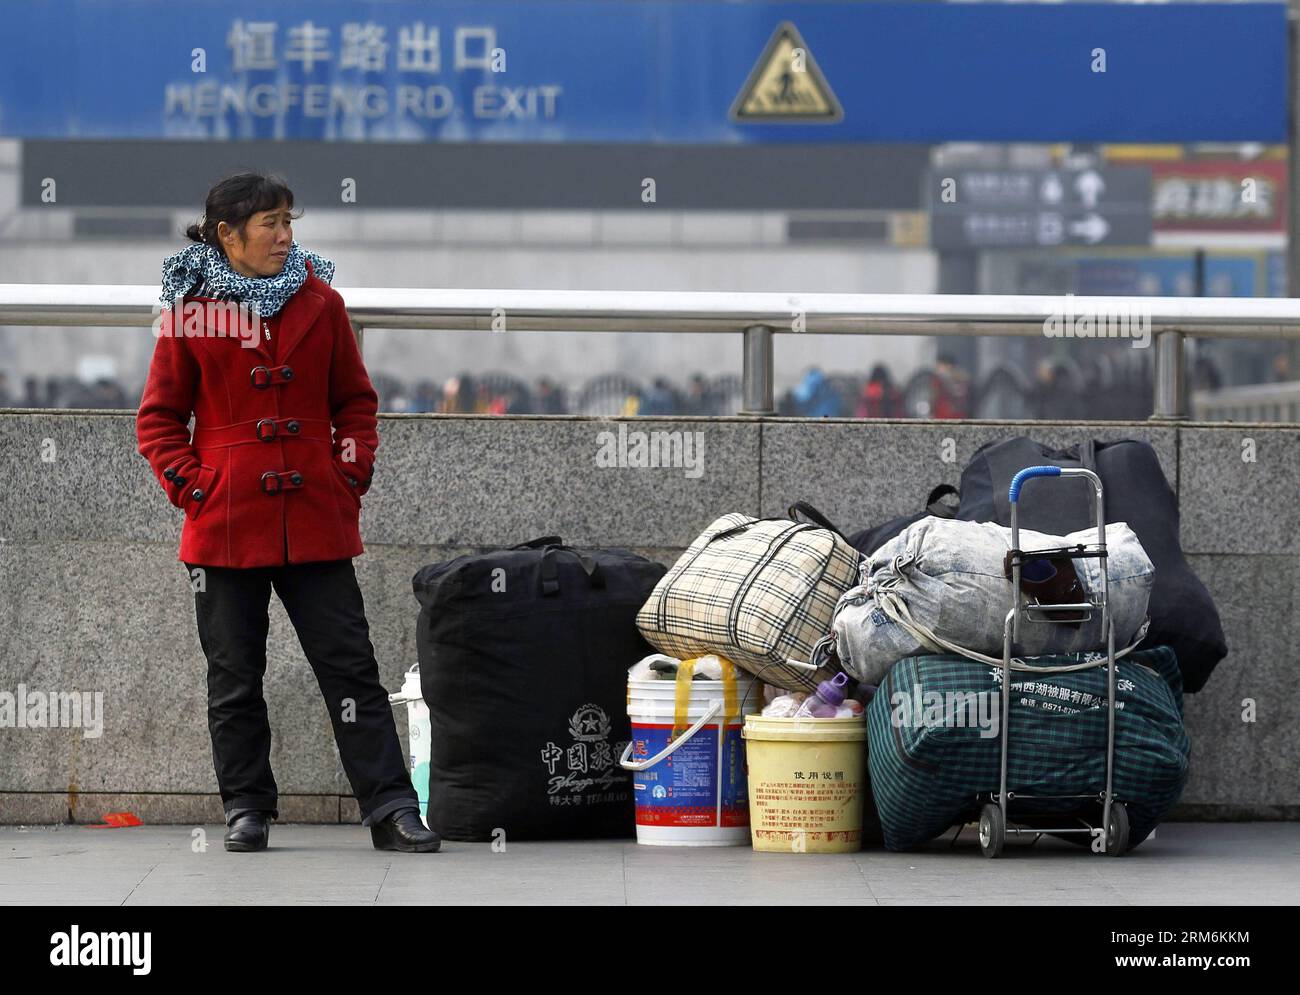 (140118) -- SHANGHAI, 18 gennaio 2014 (Xinhua) -- il lavoratore migrante Hu Gaihua attende fuori dalla stazione ferroviaria di Shanghai, East China S Shanghai, 18 gennaio 2014. Un viaggio in treno a lunga distanza non può scoraggiare il desiderio delle persone di riunirsi con i familiari durante il capodanno lunare cinese. Hanno provato tutti i mezzi per ottenere un biglietto per tornare alla città natale prima del festival. (Xinhua/Ding Ting) (cjq) CINA-SHANGHAI-LUNAR NEW YEAR TRAVEL RUSH (CN) PUBLICATIONxNOTxINxCHN Shanghai Jan 18 2014 XINHUA Immigrant Worker HU attende fuori dalla stazione ferroviaria di Shanghai East China S Shanghai Jan 18 2014 A. Foto Stock